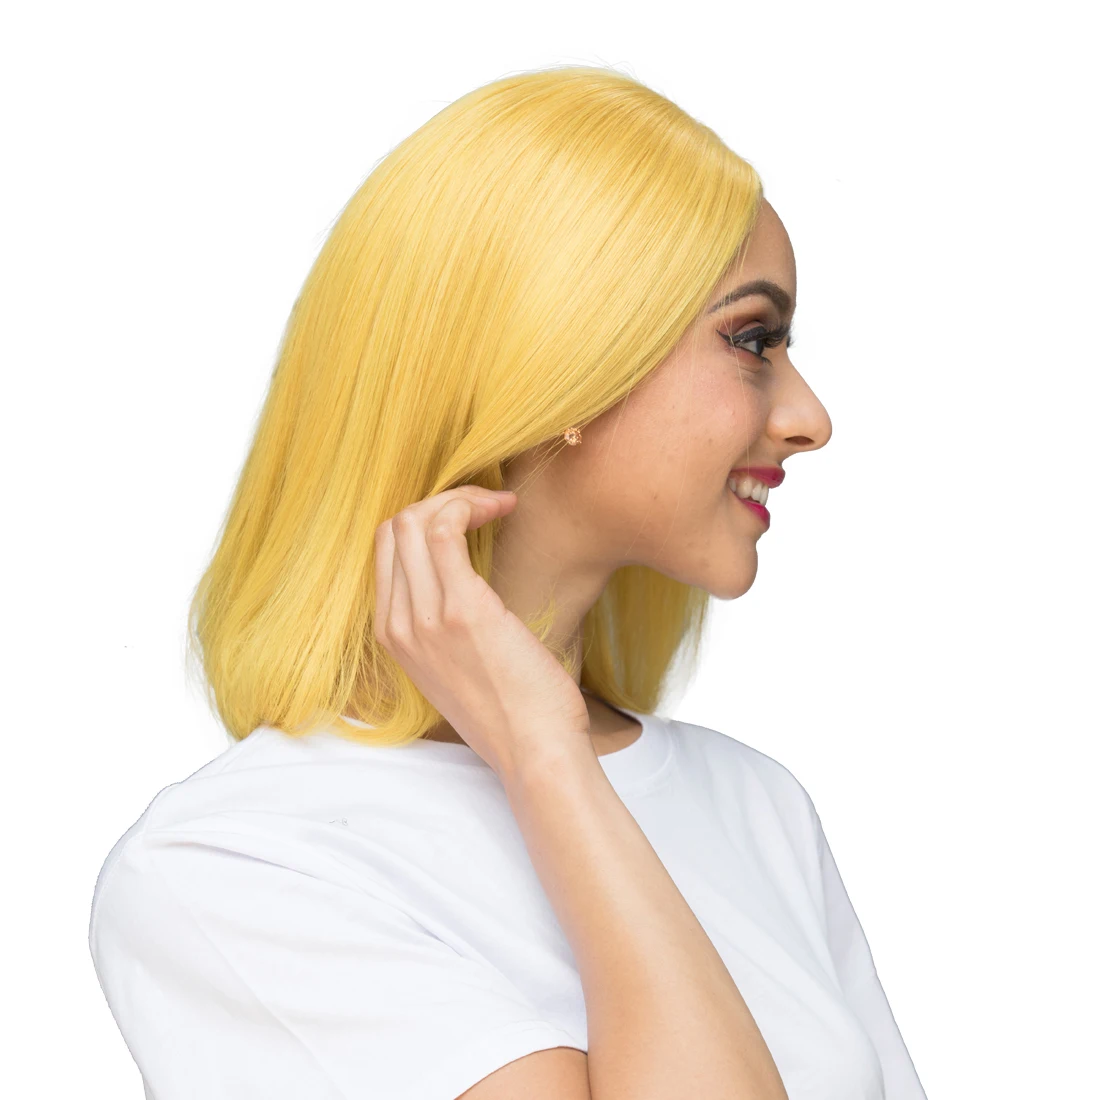 Pelucas de cabello humano Bob de color amarillo real de jengibre de Lsy Hair, pelucas de cabello humano virgen con frente de encaje corto recto sin cola para la venta .jpg